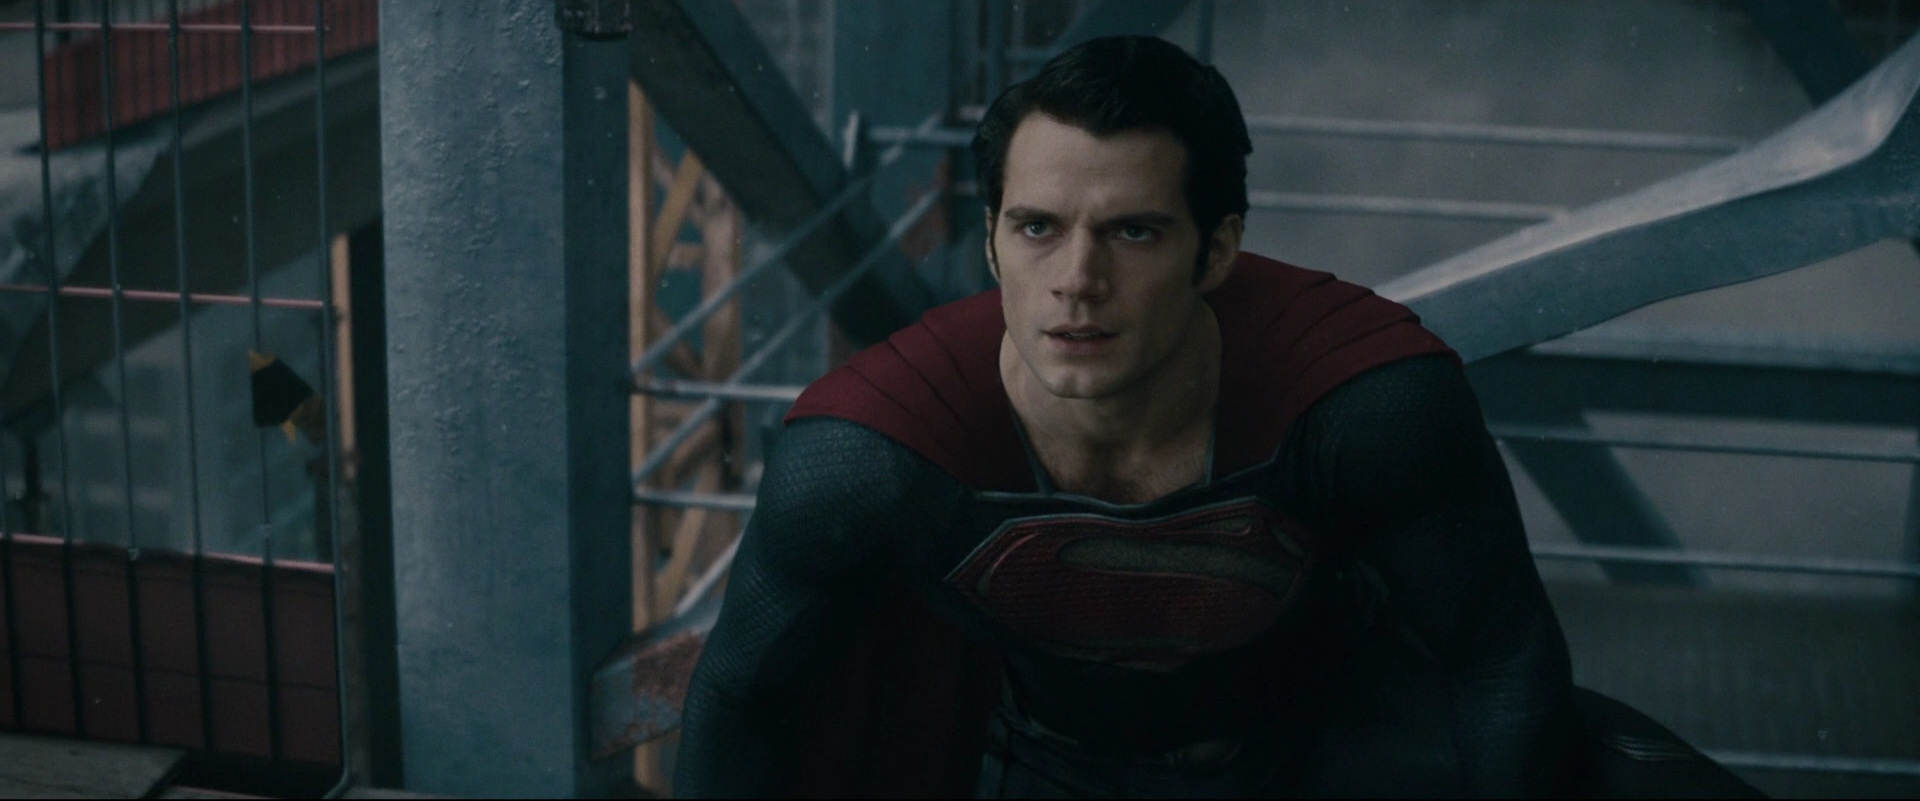 Спасает людей человек из стали. Генерал зод Супермен. Man of Steel 2013. Superman vs Zod man of Steel.